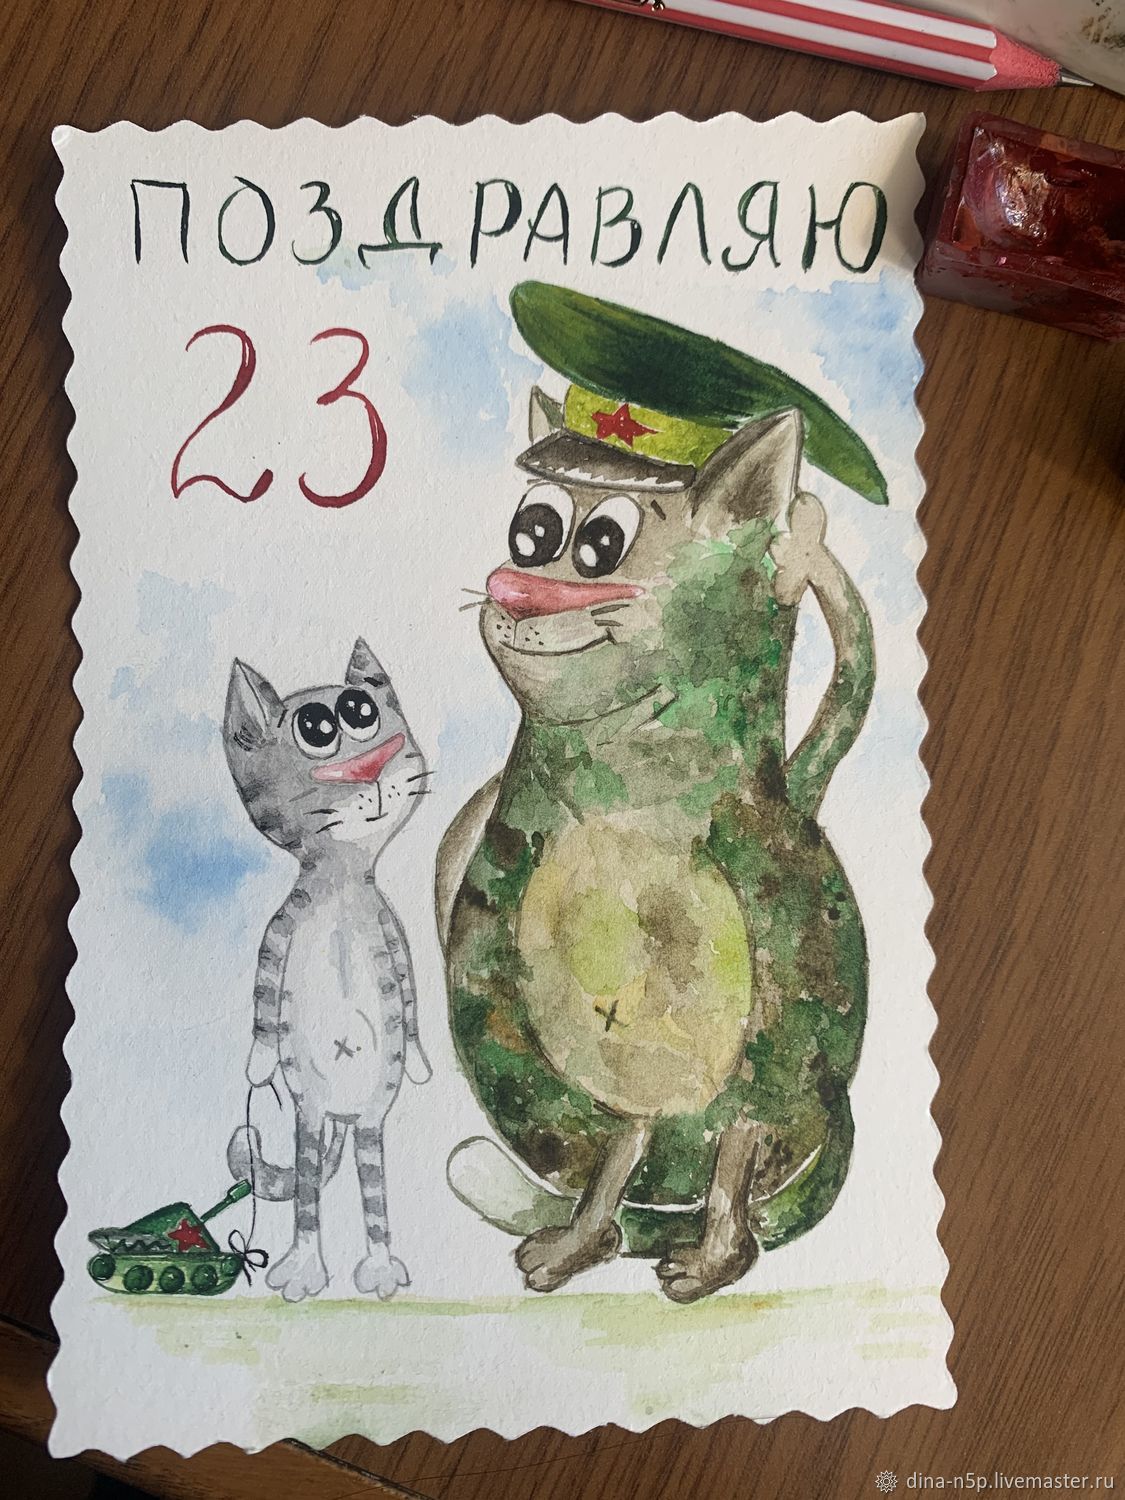 Детская открытка для папы на 23 февраля - скачать бесплатно на сайте paraskevat.ru